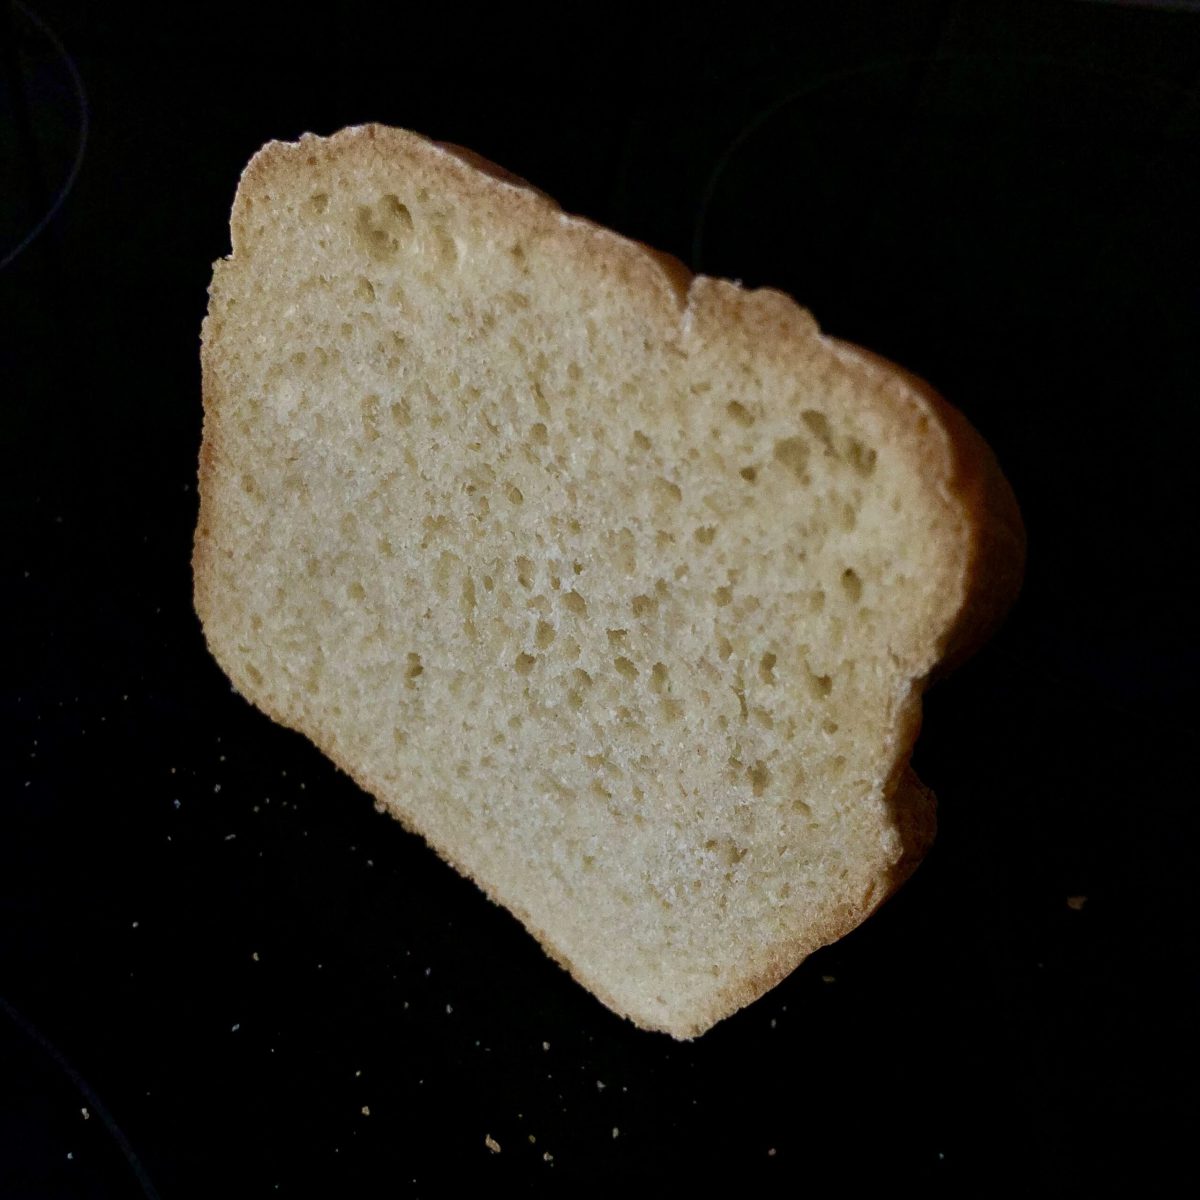 Scheibe Brot